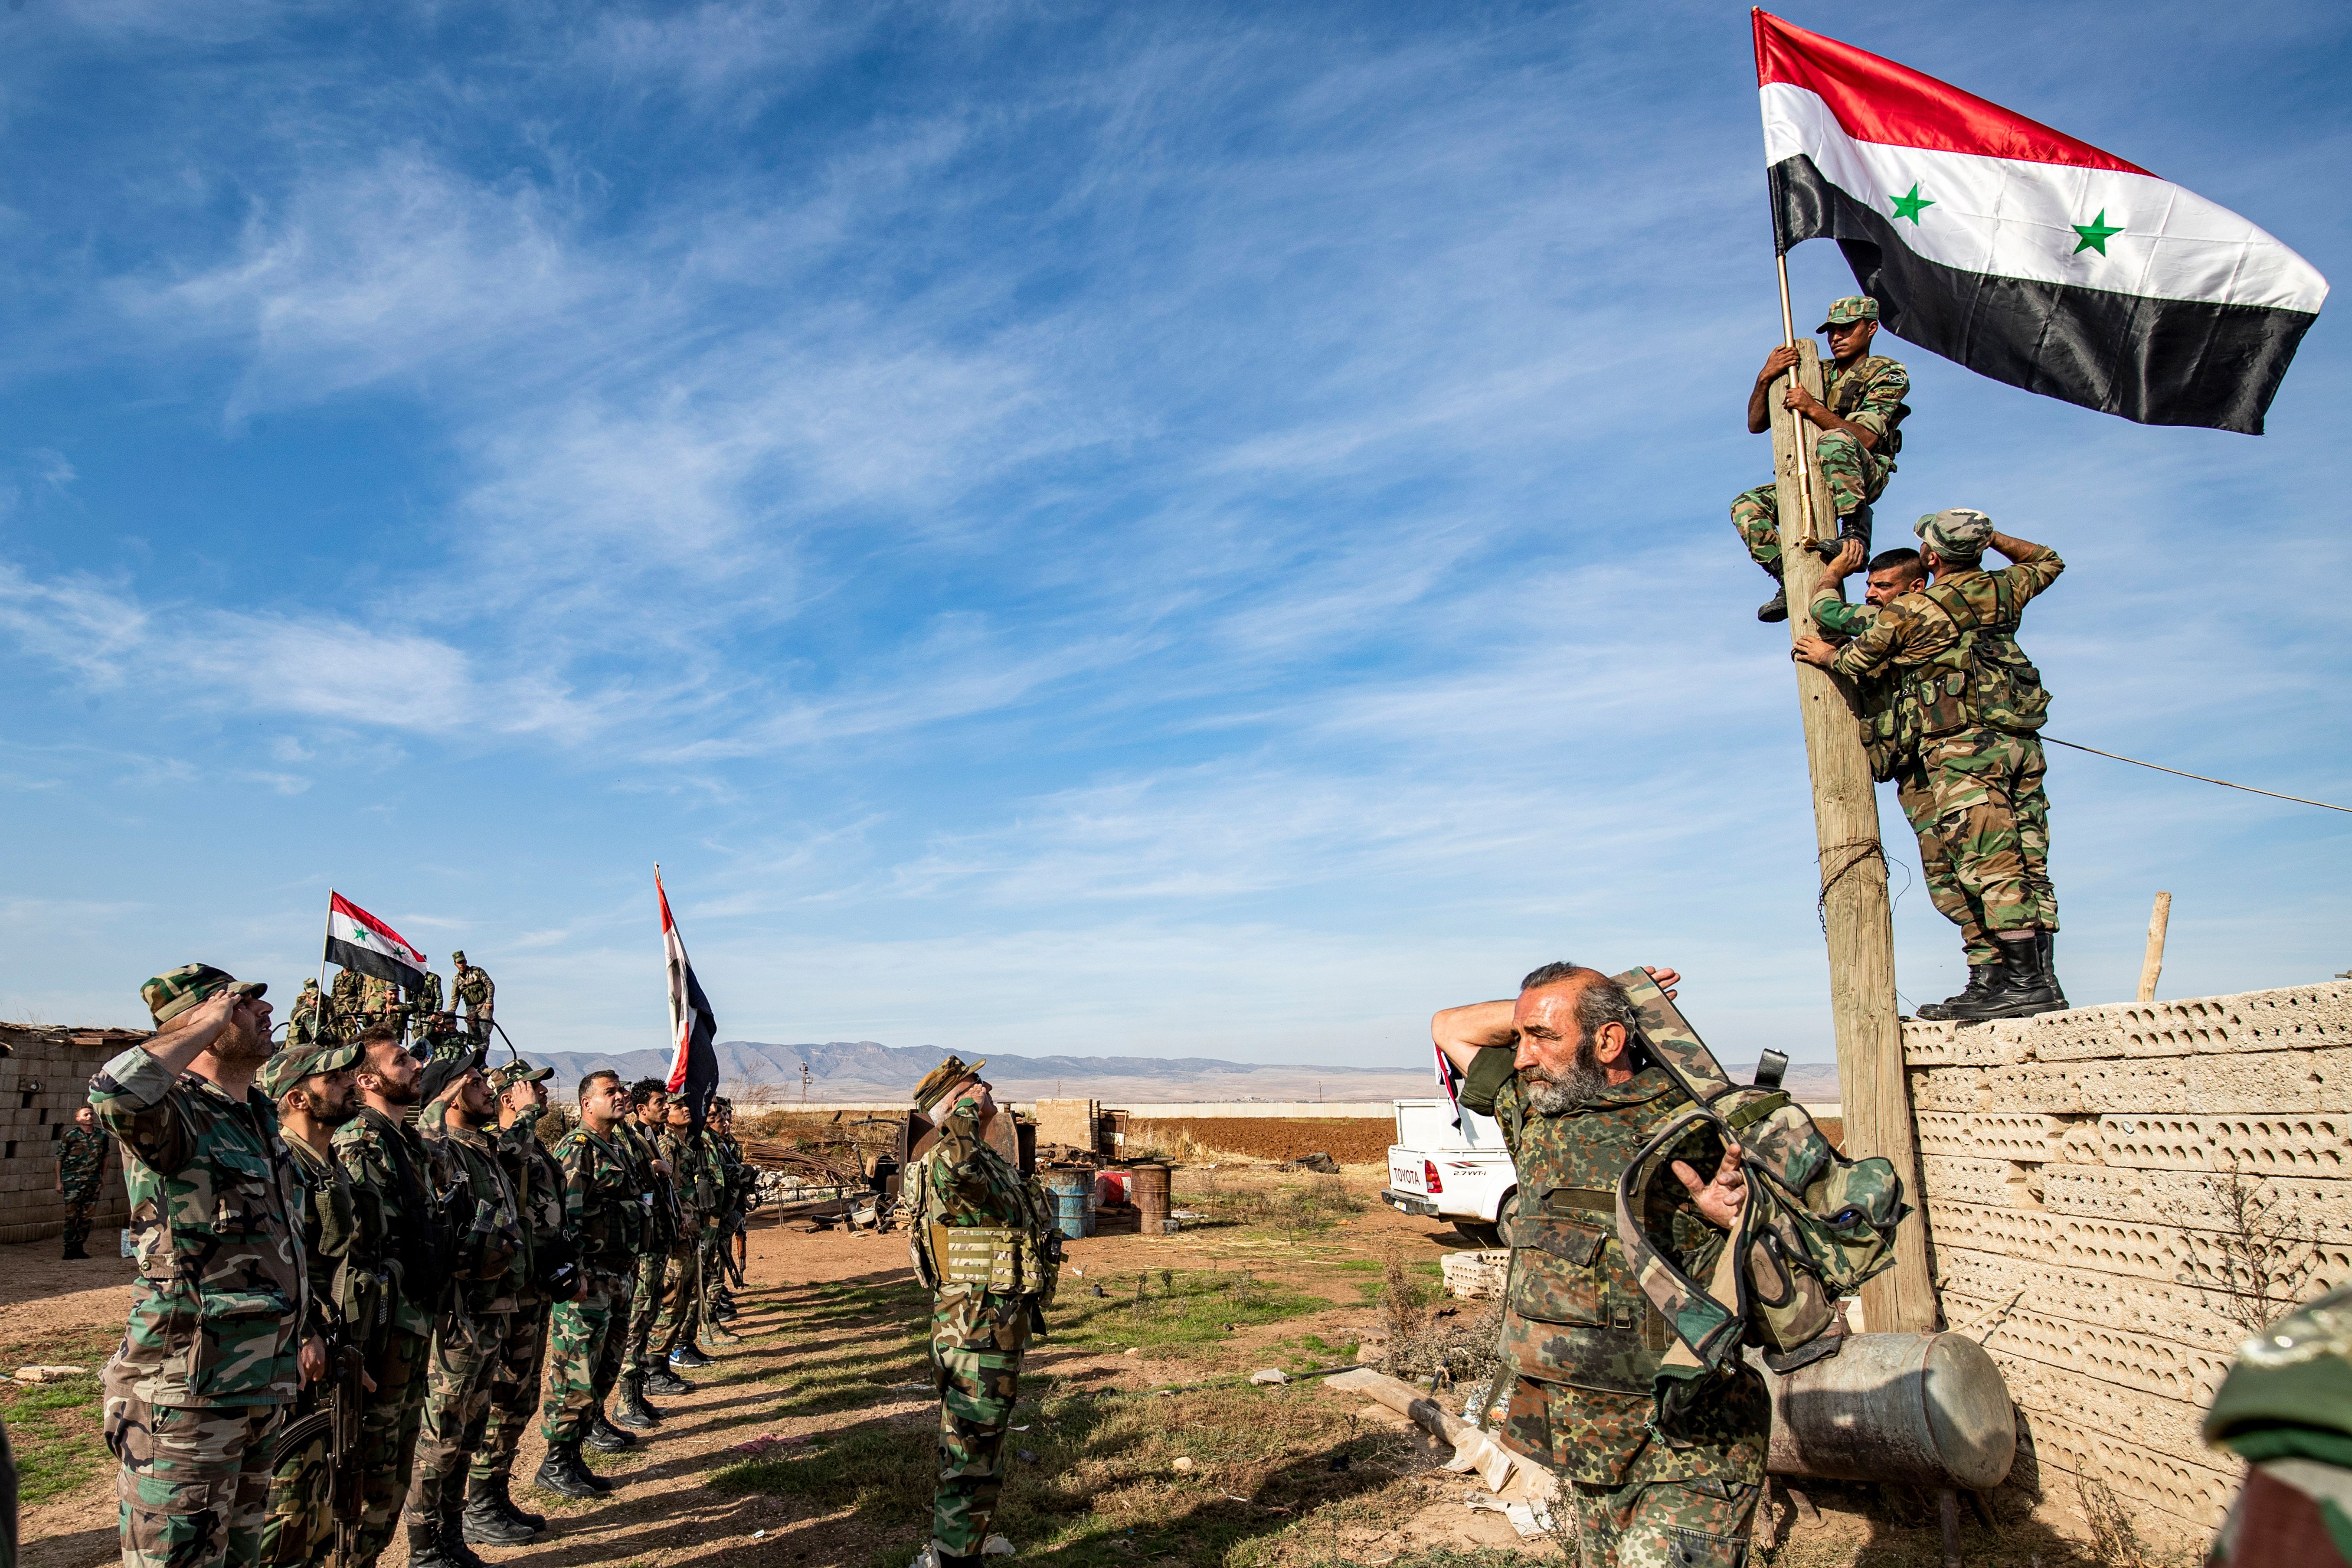 Новости событий на ближнем востоке. Правительственные войска Сирии. Сирийские военные. Сирийская правительственная армия. Солдаты сирийской армии.